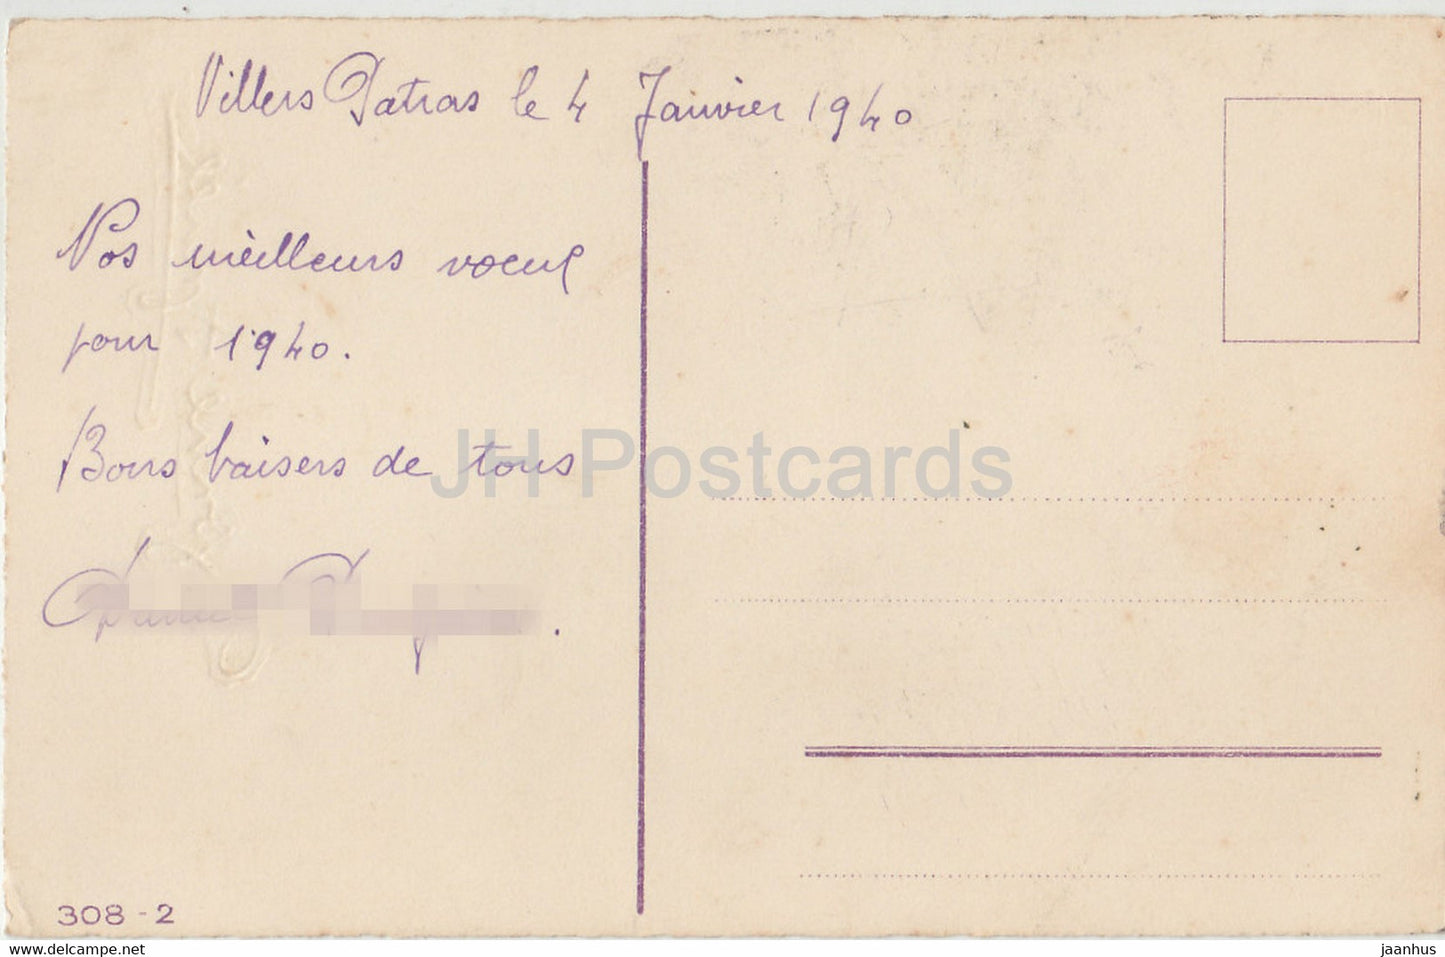 Geburtstagsgrußkarte – Bonne Annee – Blumen – Tulpen – 308-2 – Illustration – alte Postkarte – 1940 – Frankreich – gebraucht